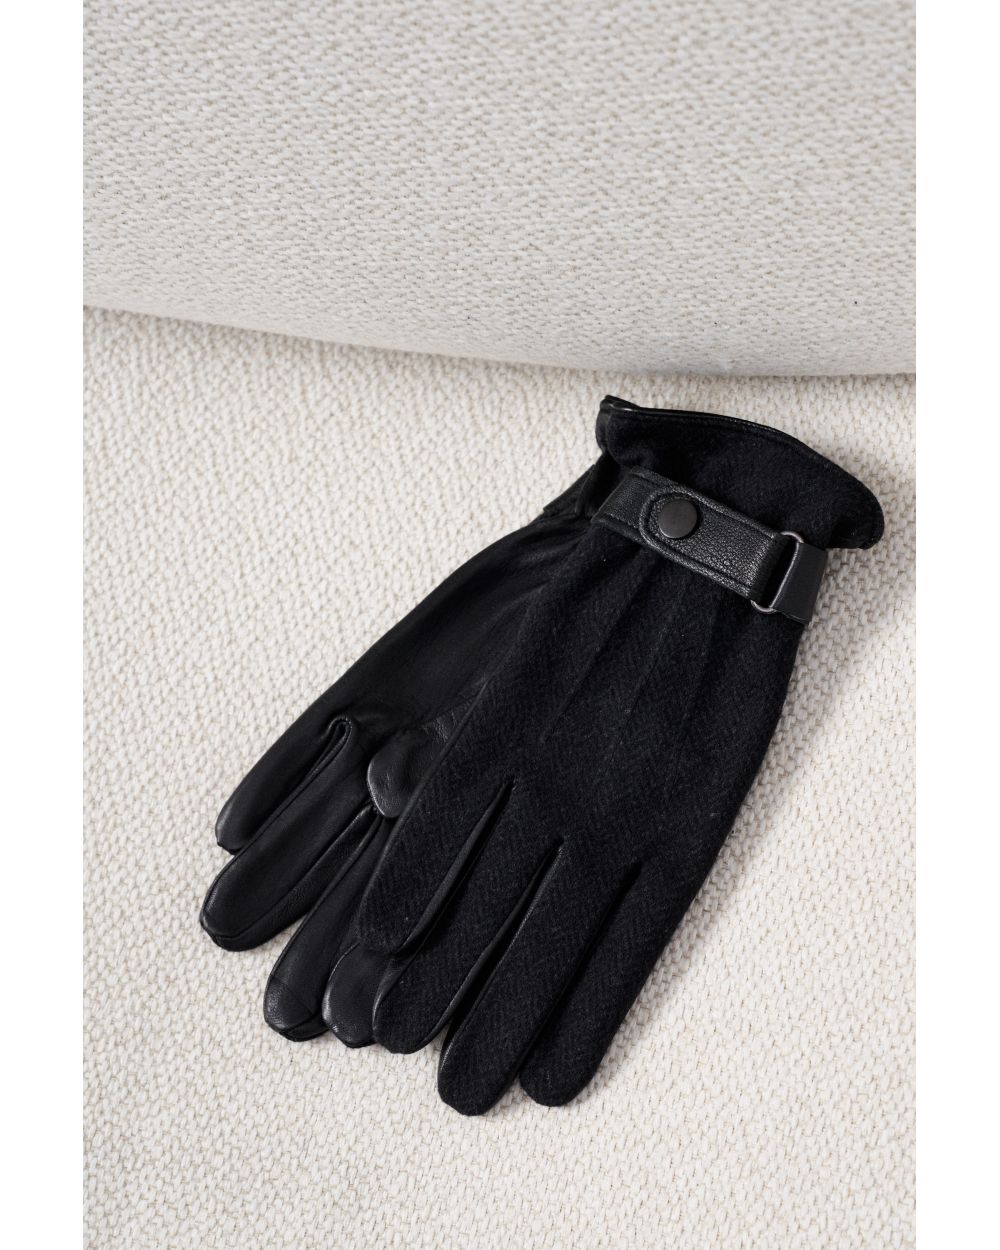 Перчатки мужские кожаные черные с темно-серым трикотажным верхом в елочку